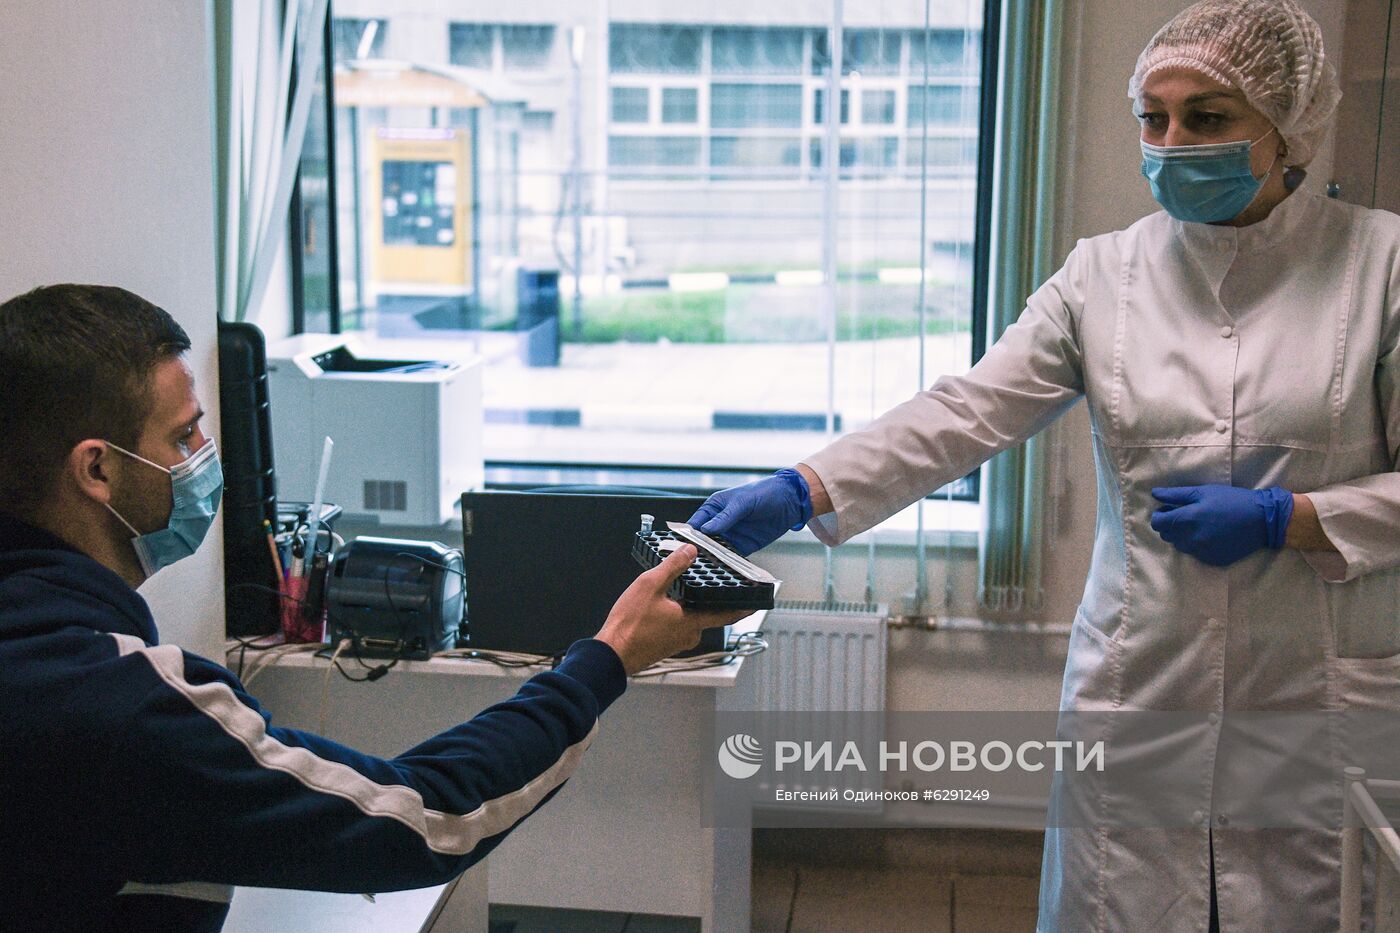 Аэропорт Шереметьево запускает экспресс-тестирование на COVID-19 для пассажиров системой EMG